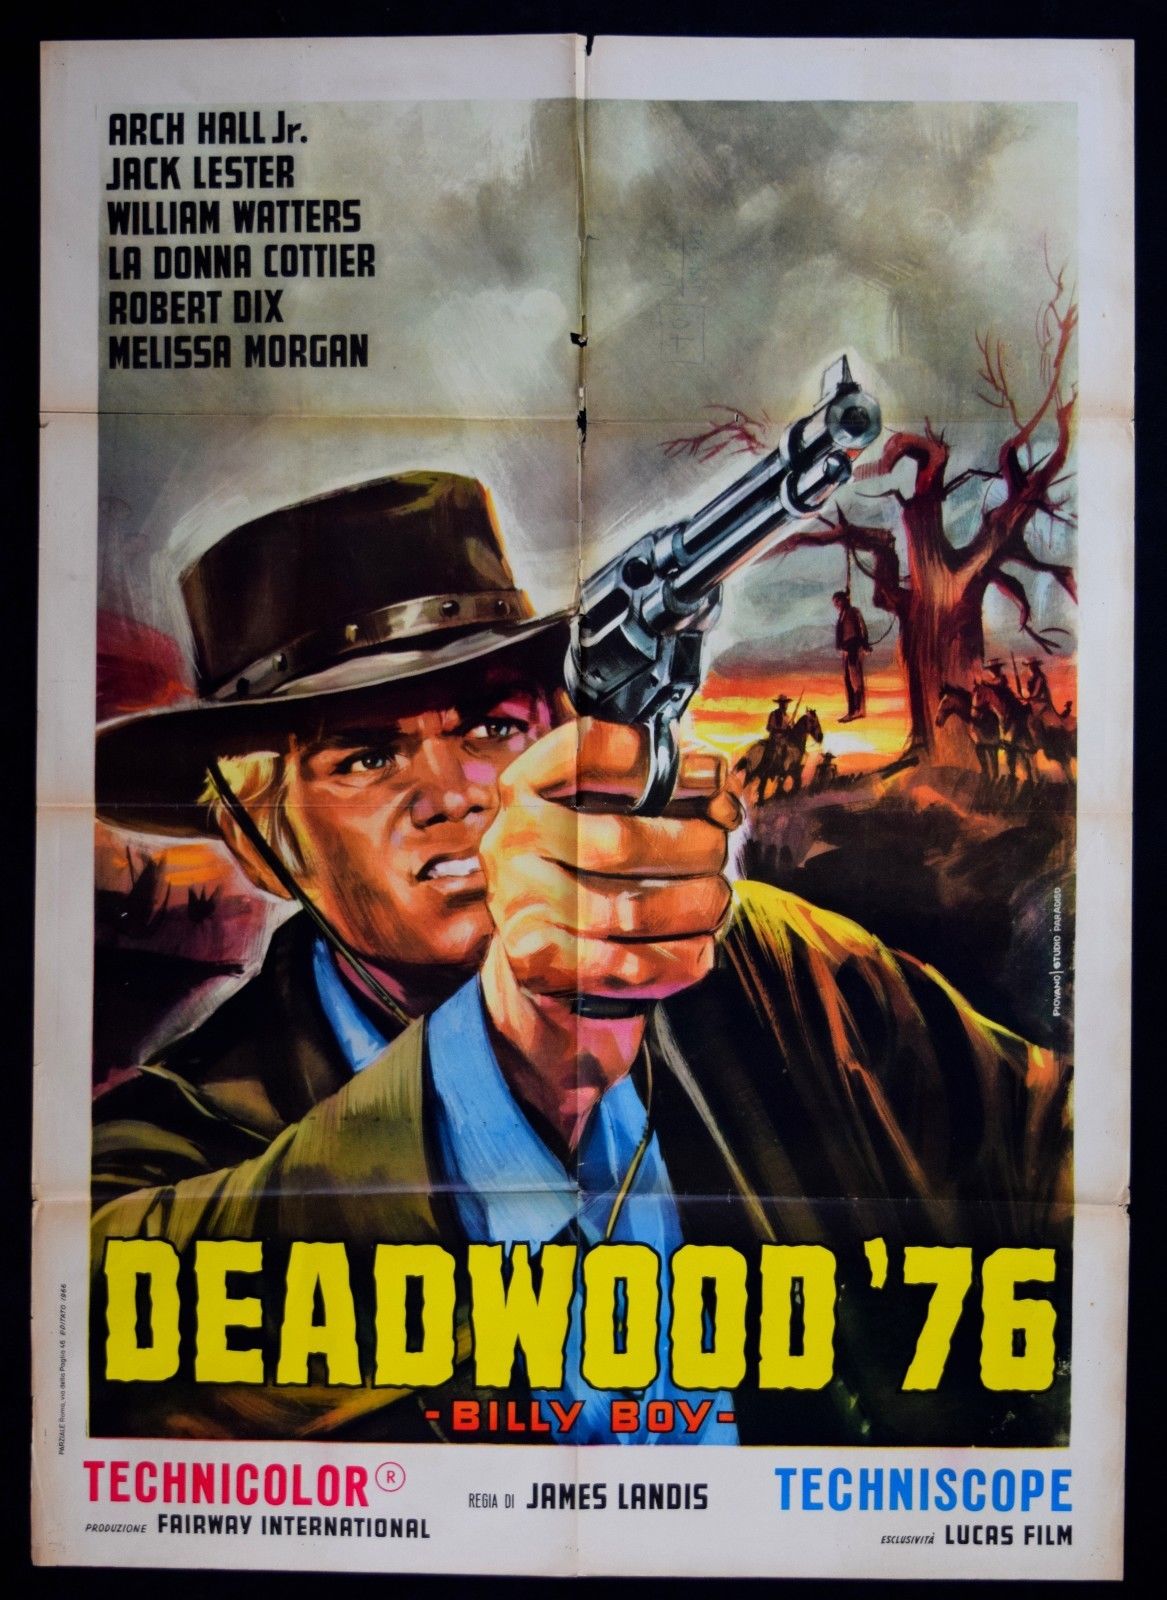 Deadwood '76